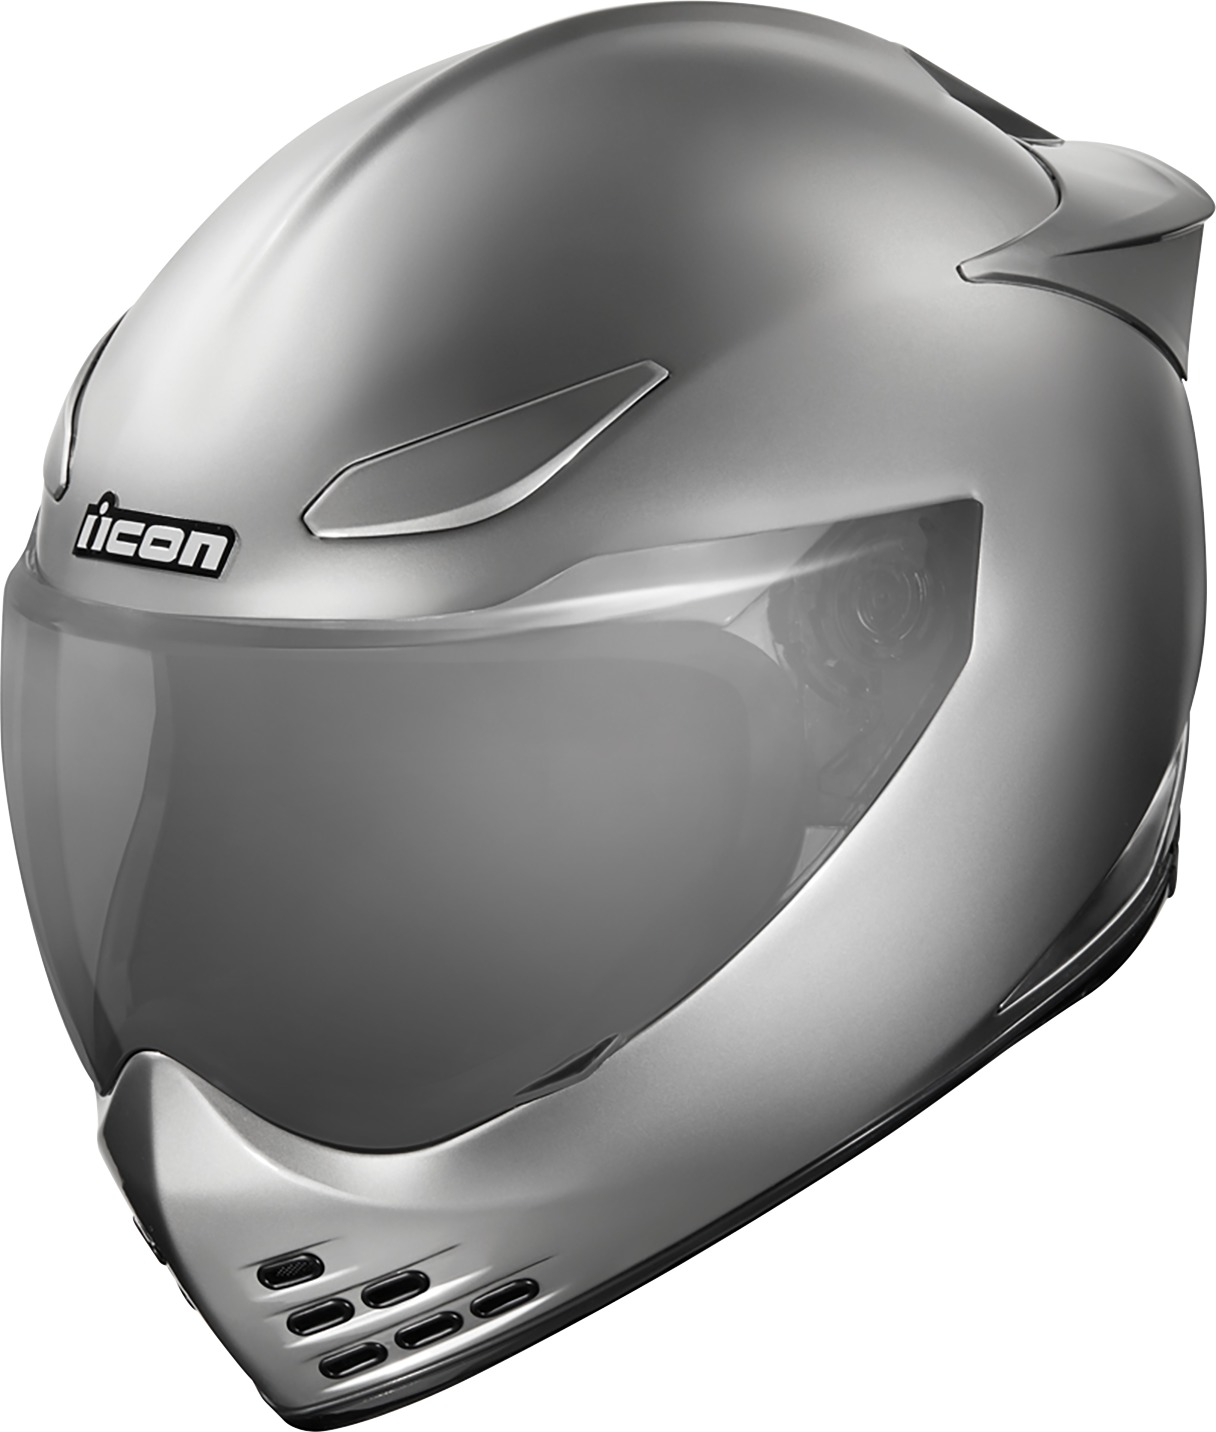 Domain Cornelius Helmet Silver Small - Click Image to Close